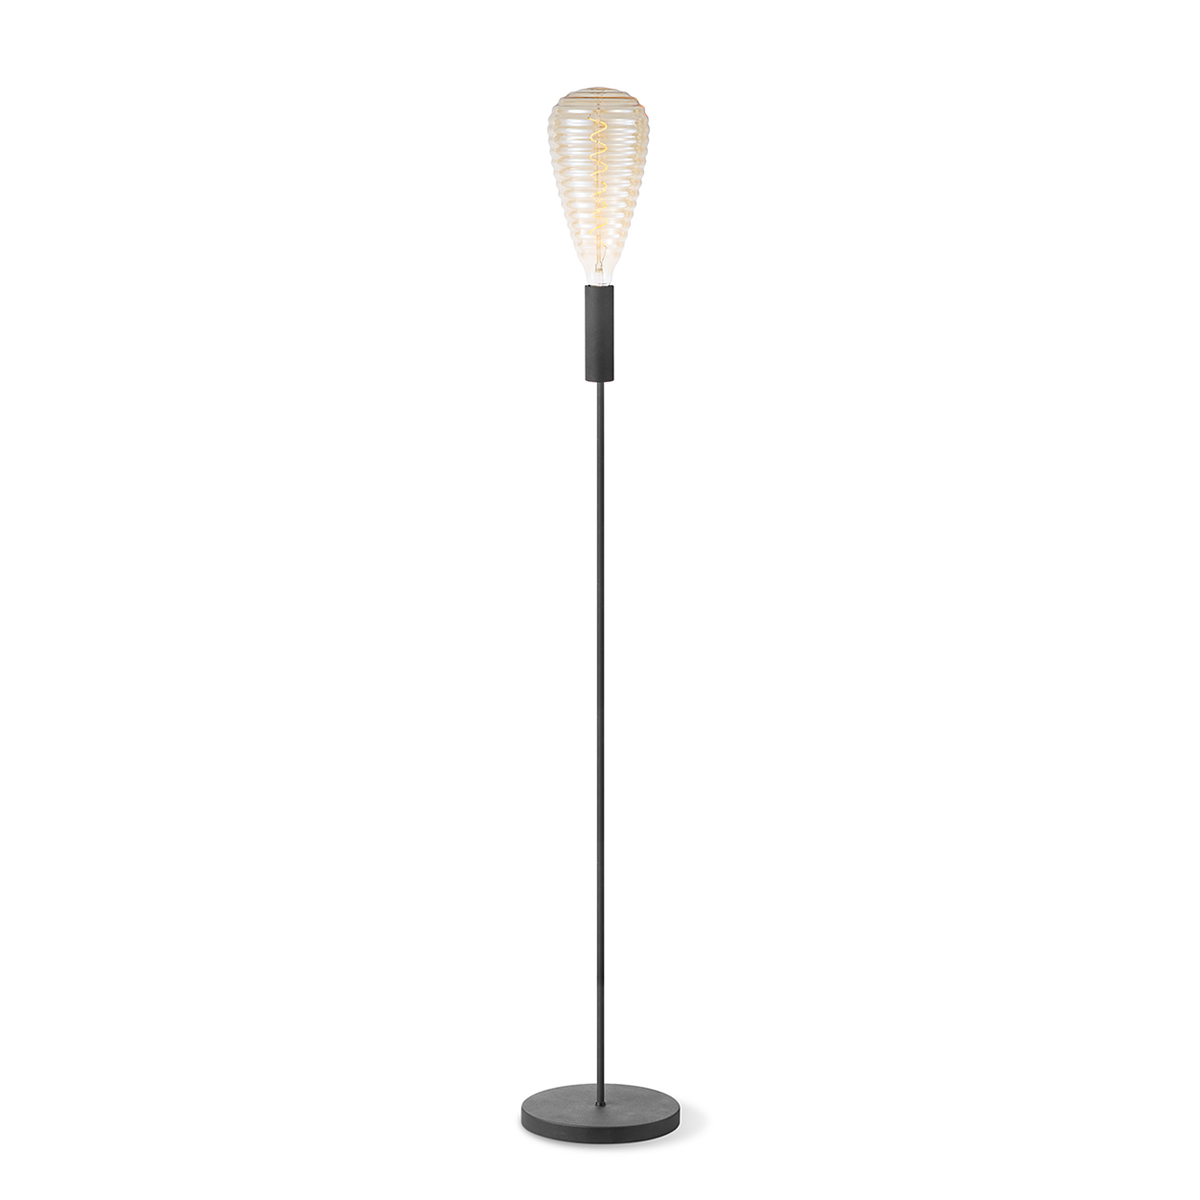 Tangla lighting - TLF2001-01SB - LED floor lamp 1 Light - metal in sand black - single - E27